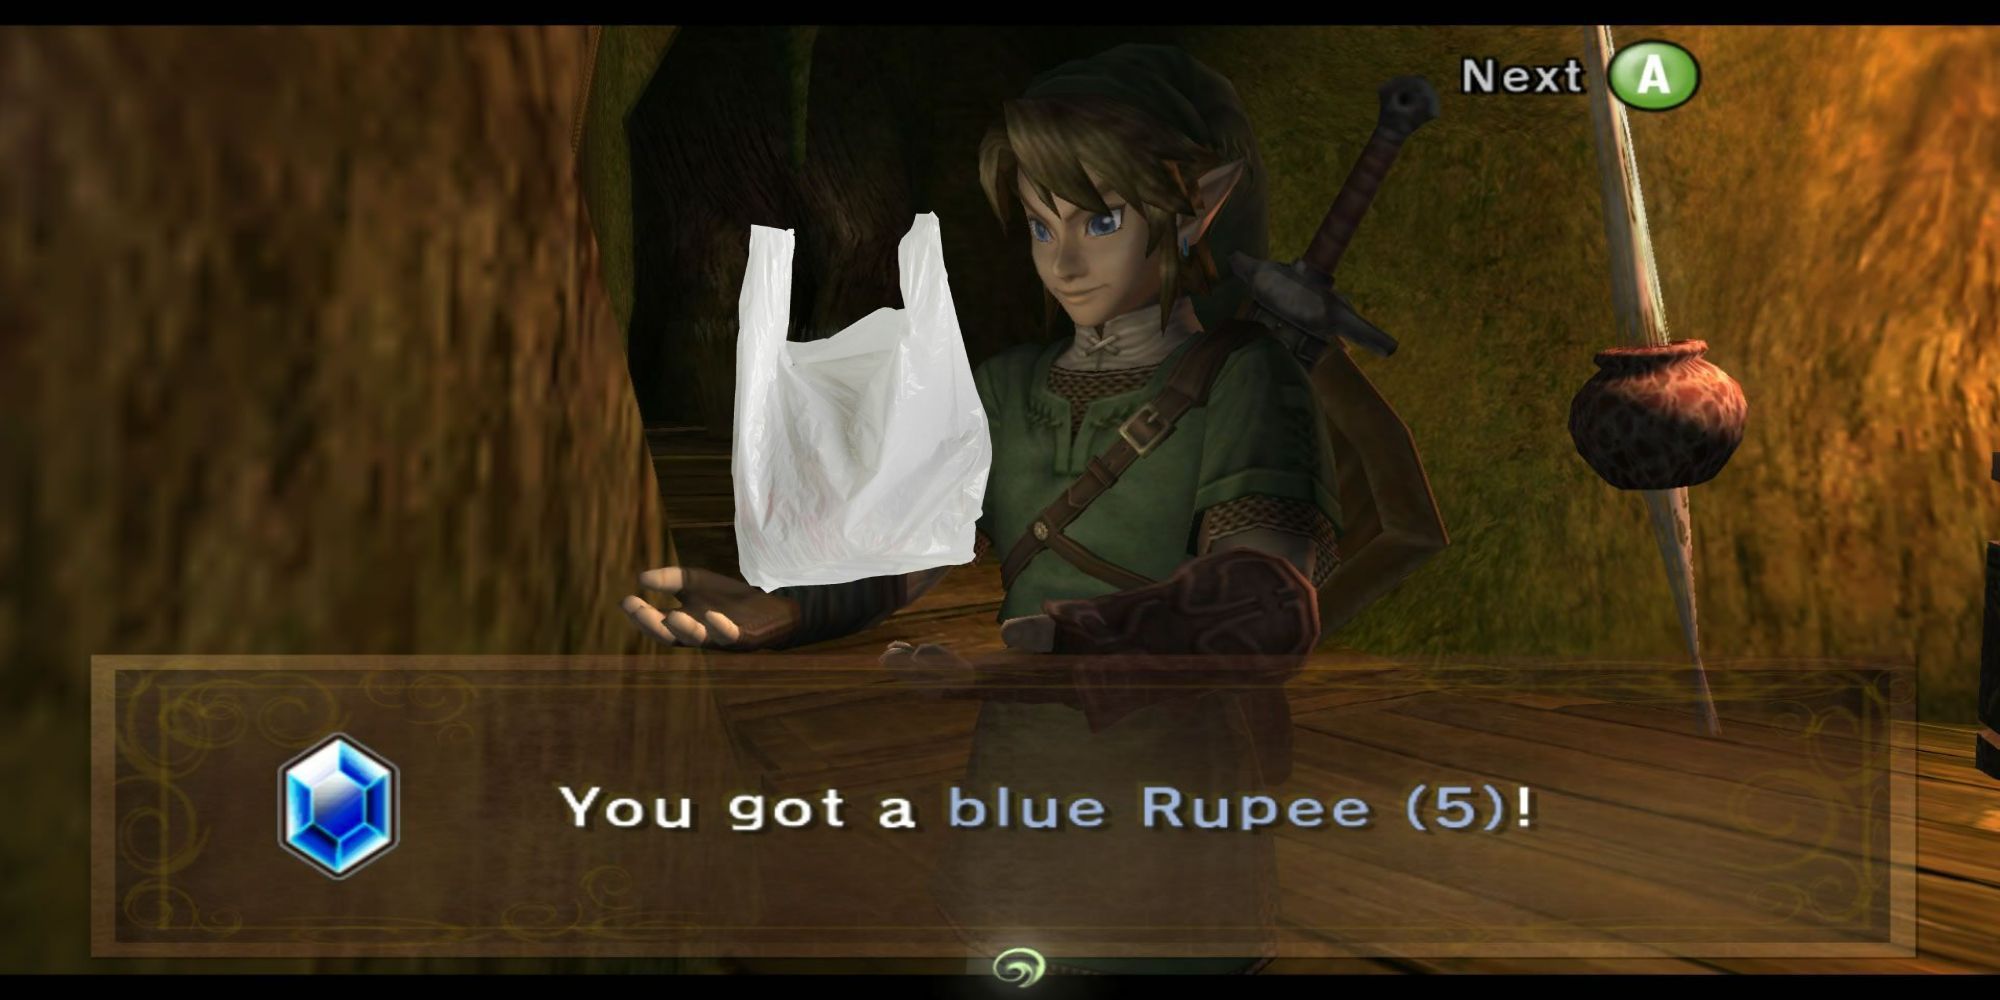 Zelda Link holding a Carrier Bag